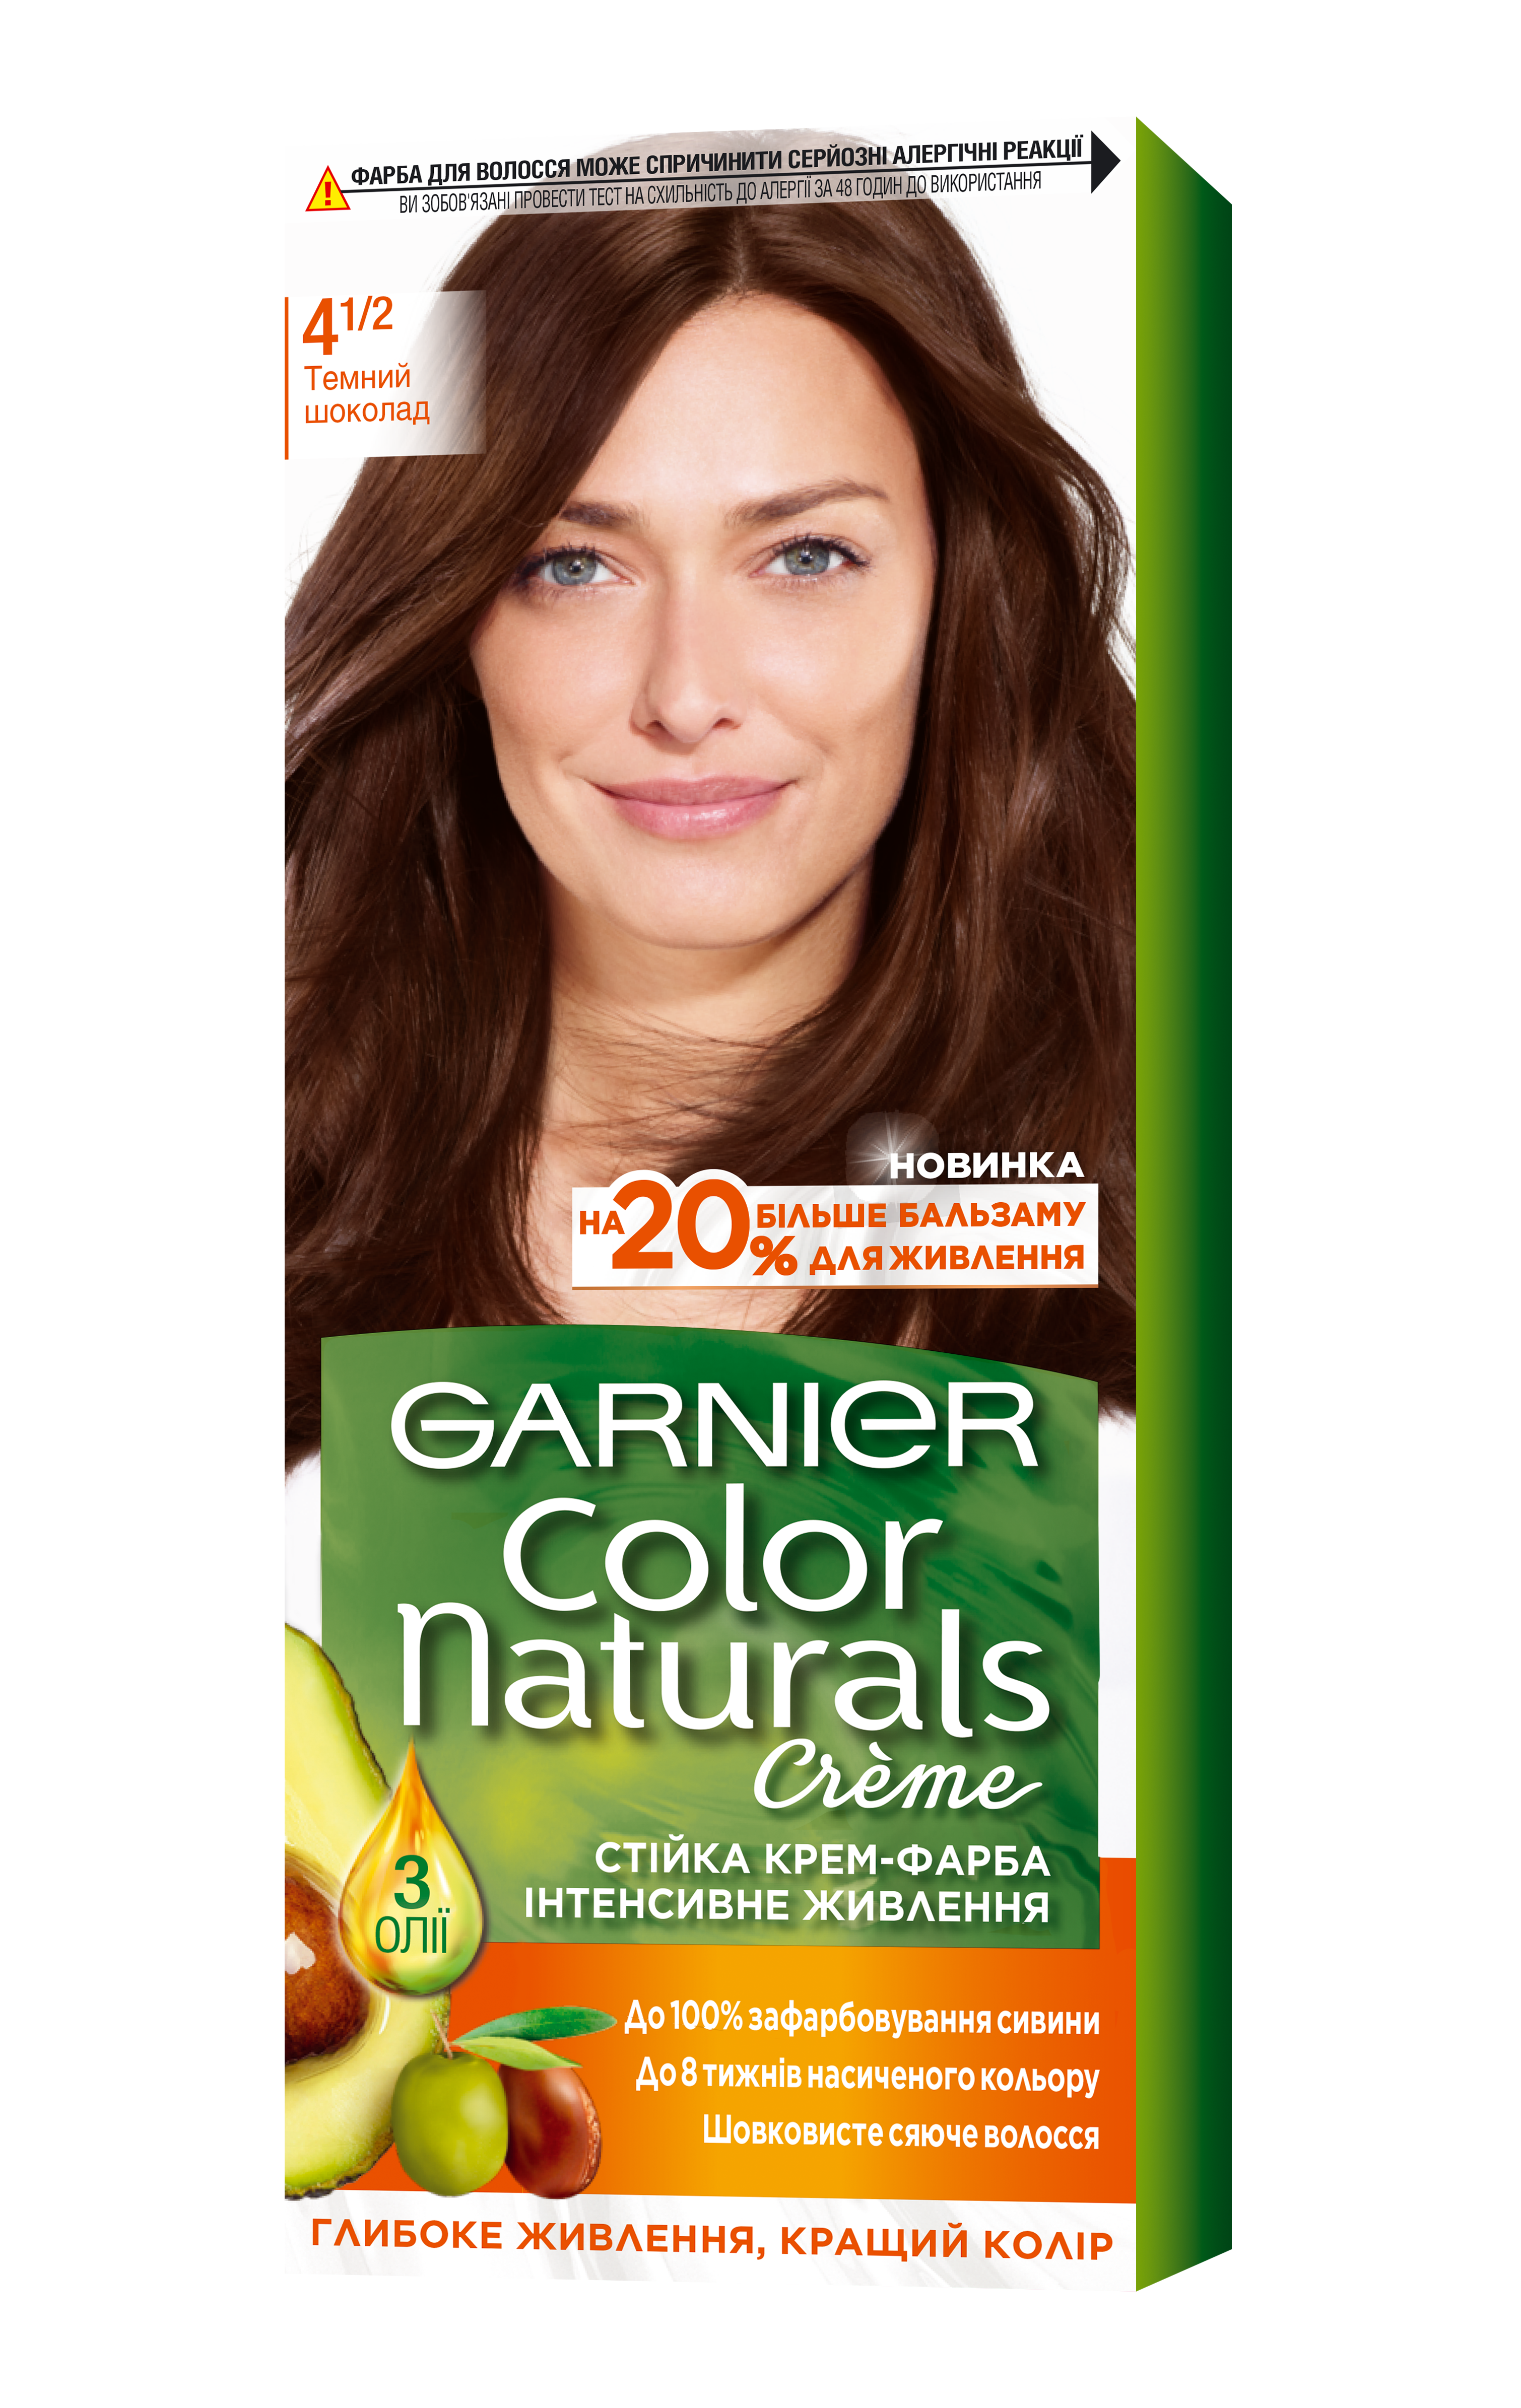 Краска для волос Garnier Color Naturals, тон 4 1/2 (Темный шоколад), 110 мл (C4432526) - фото 1